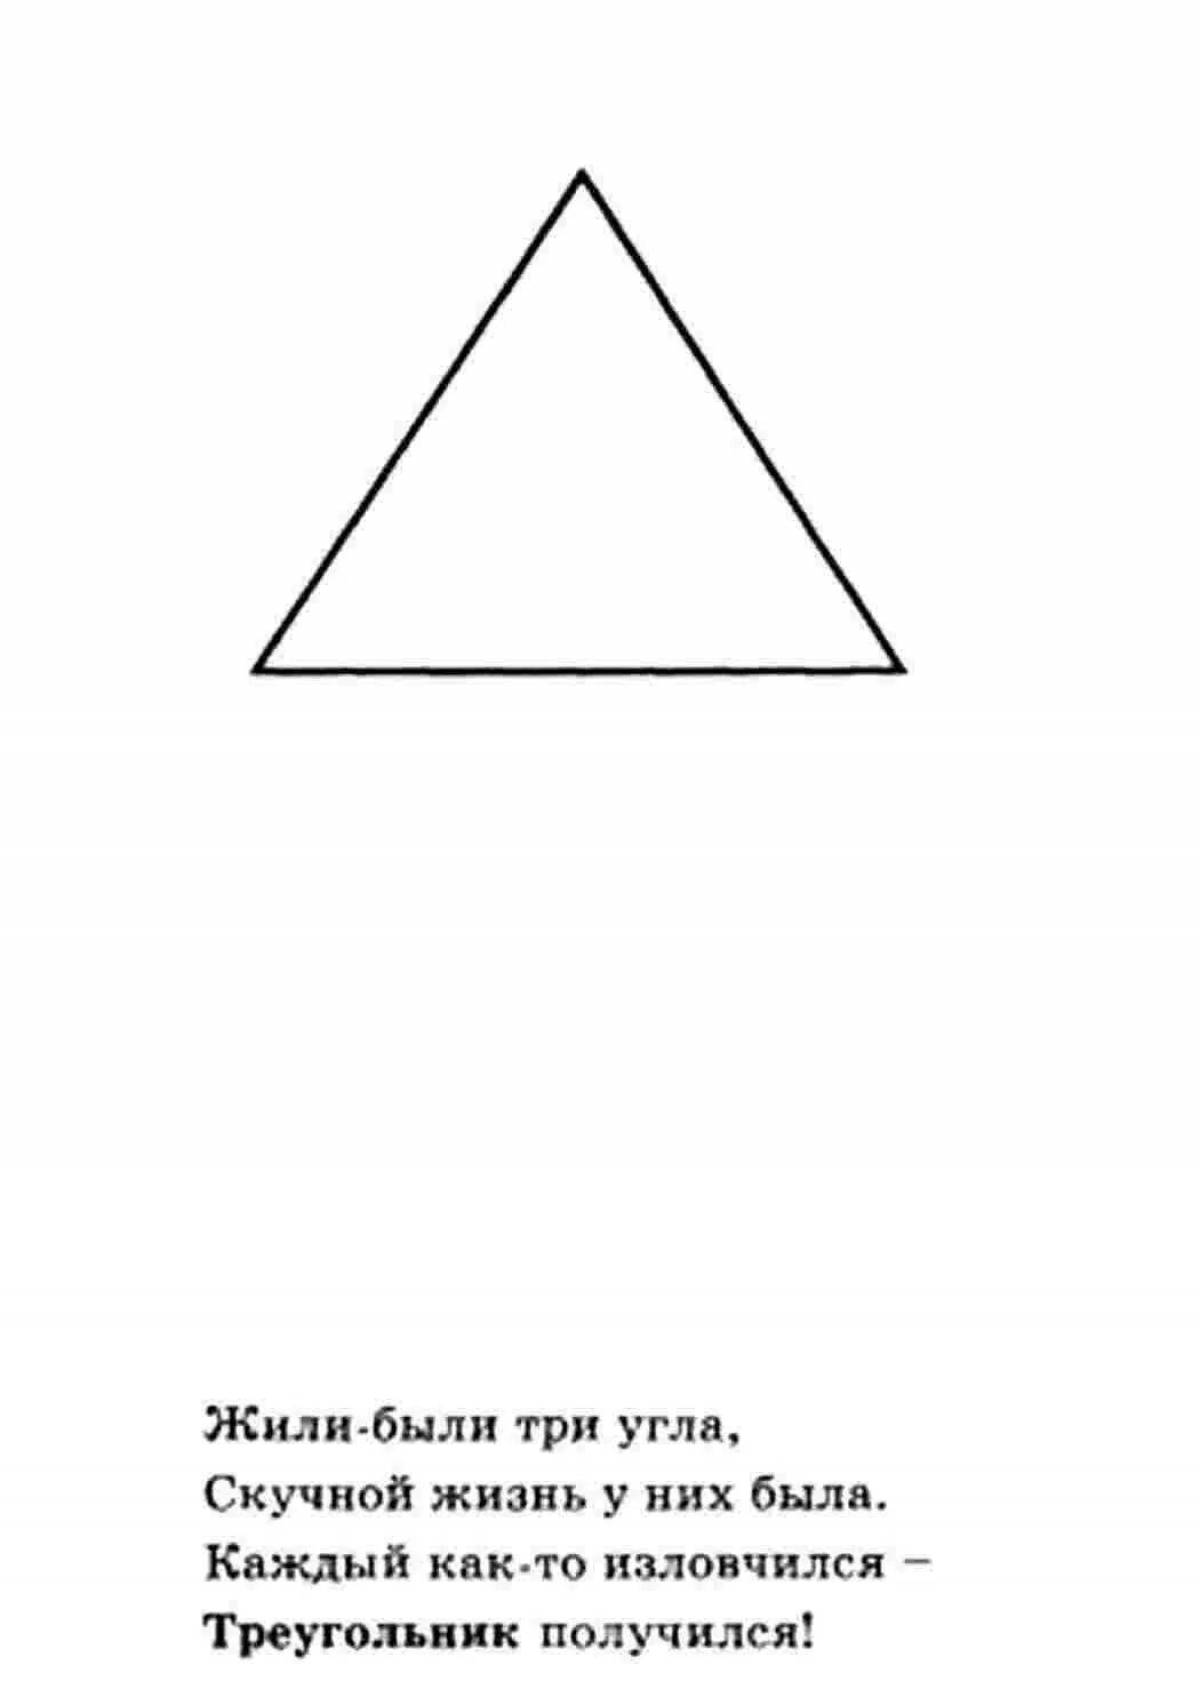 Kids triangle #1